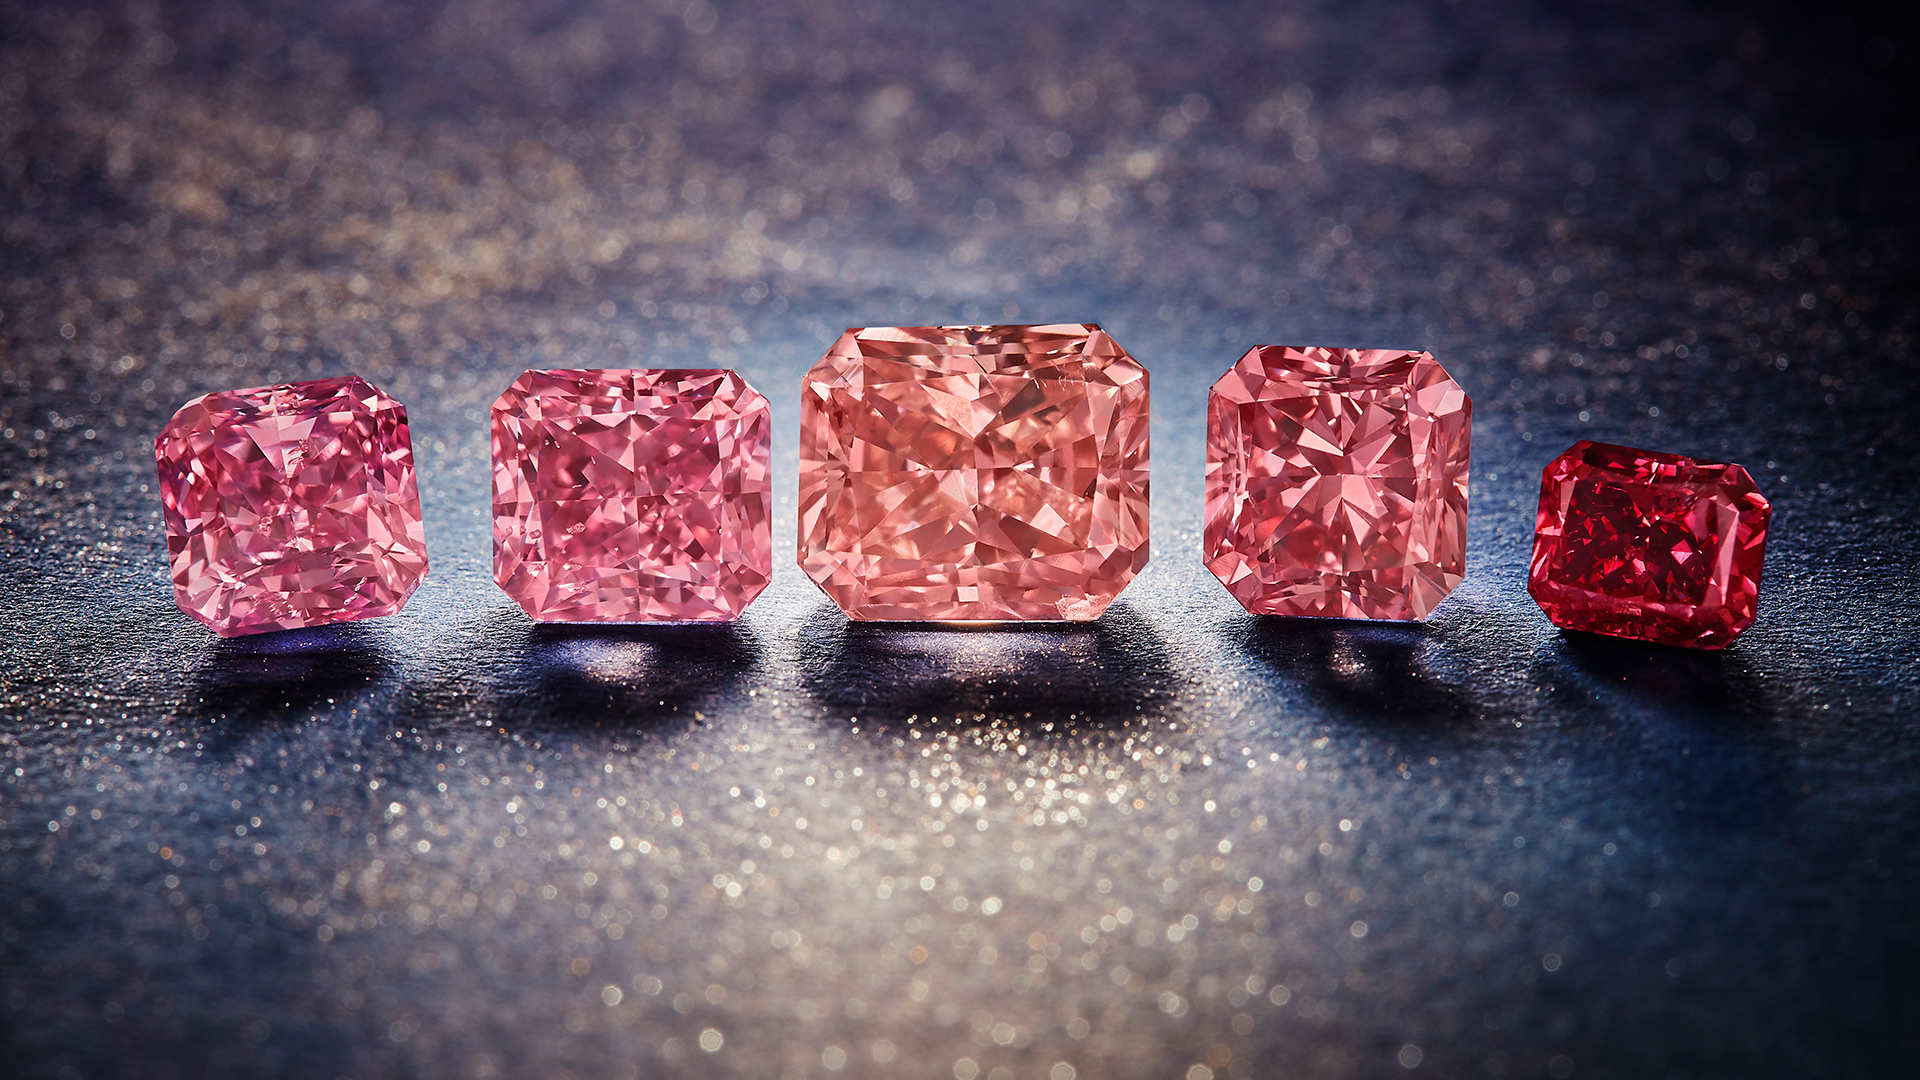 The 2021 Argyle Pink Diamonds Tender hero diamonds